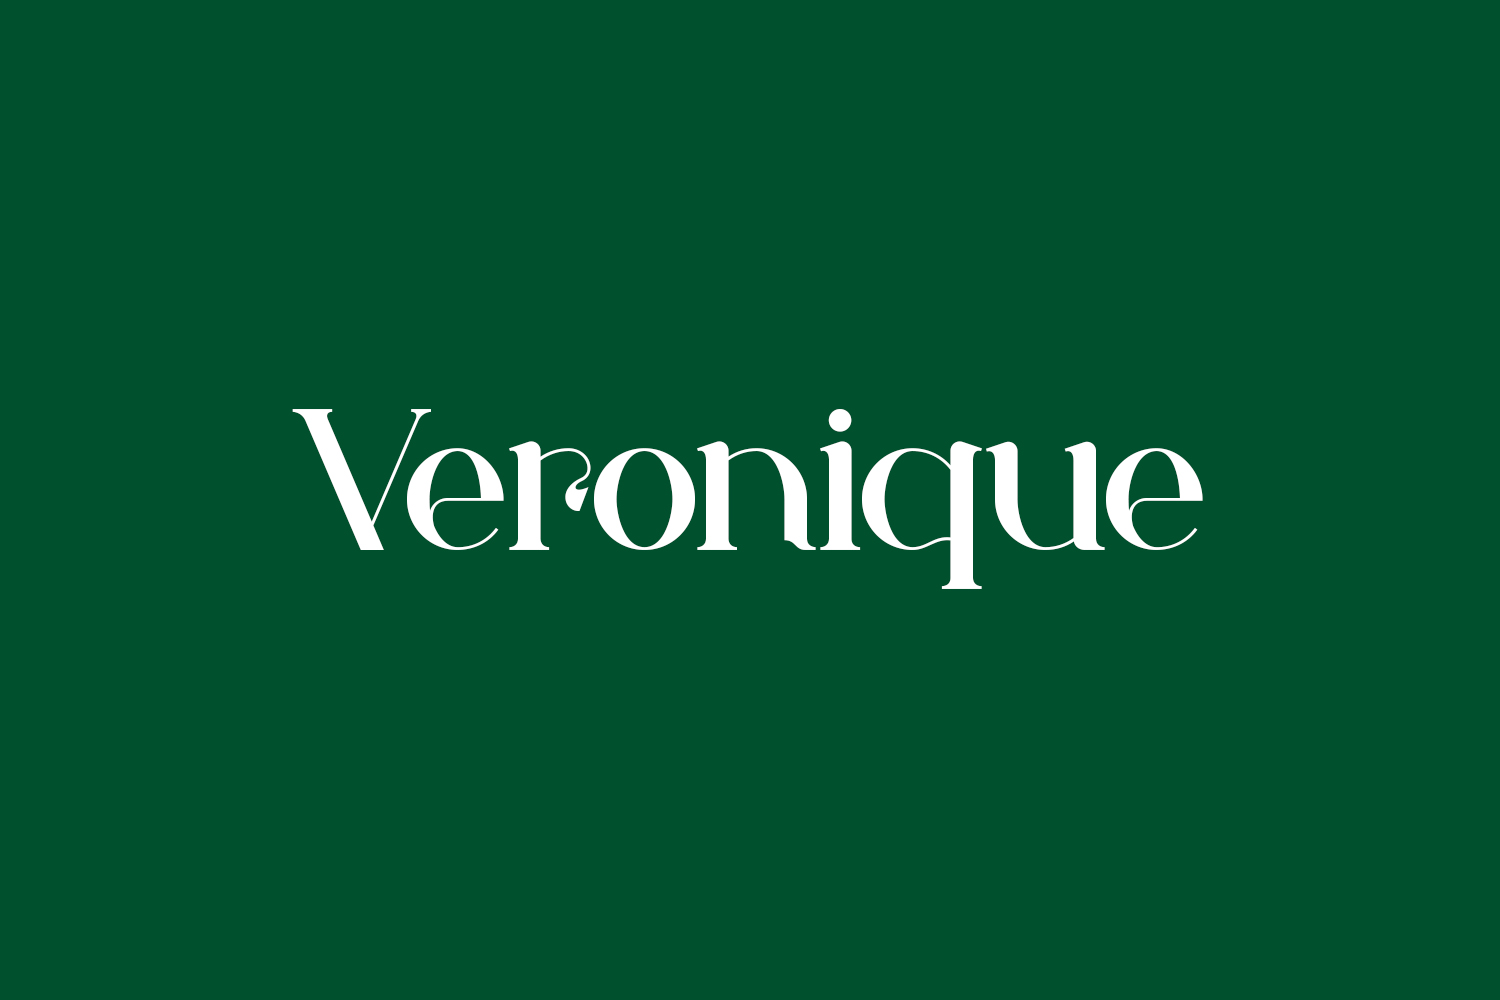 Veronique Free Font